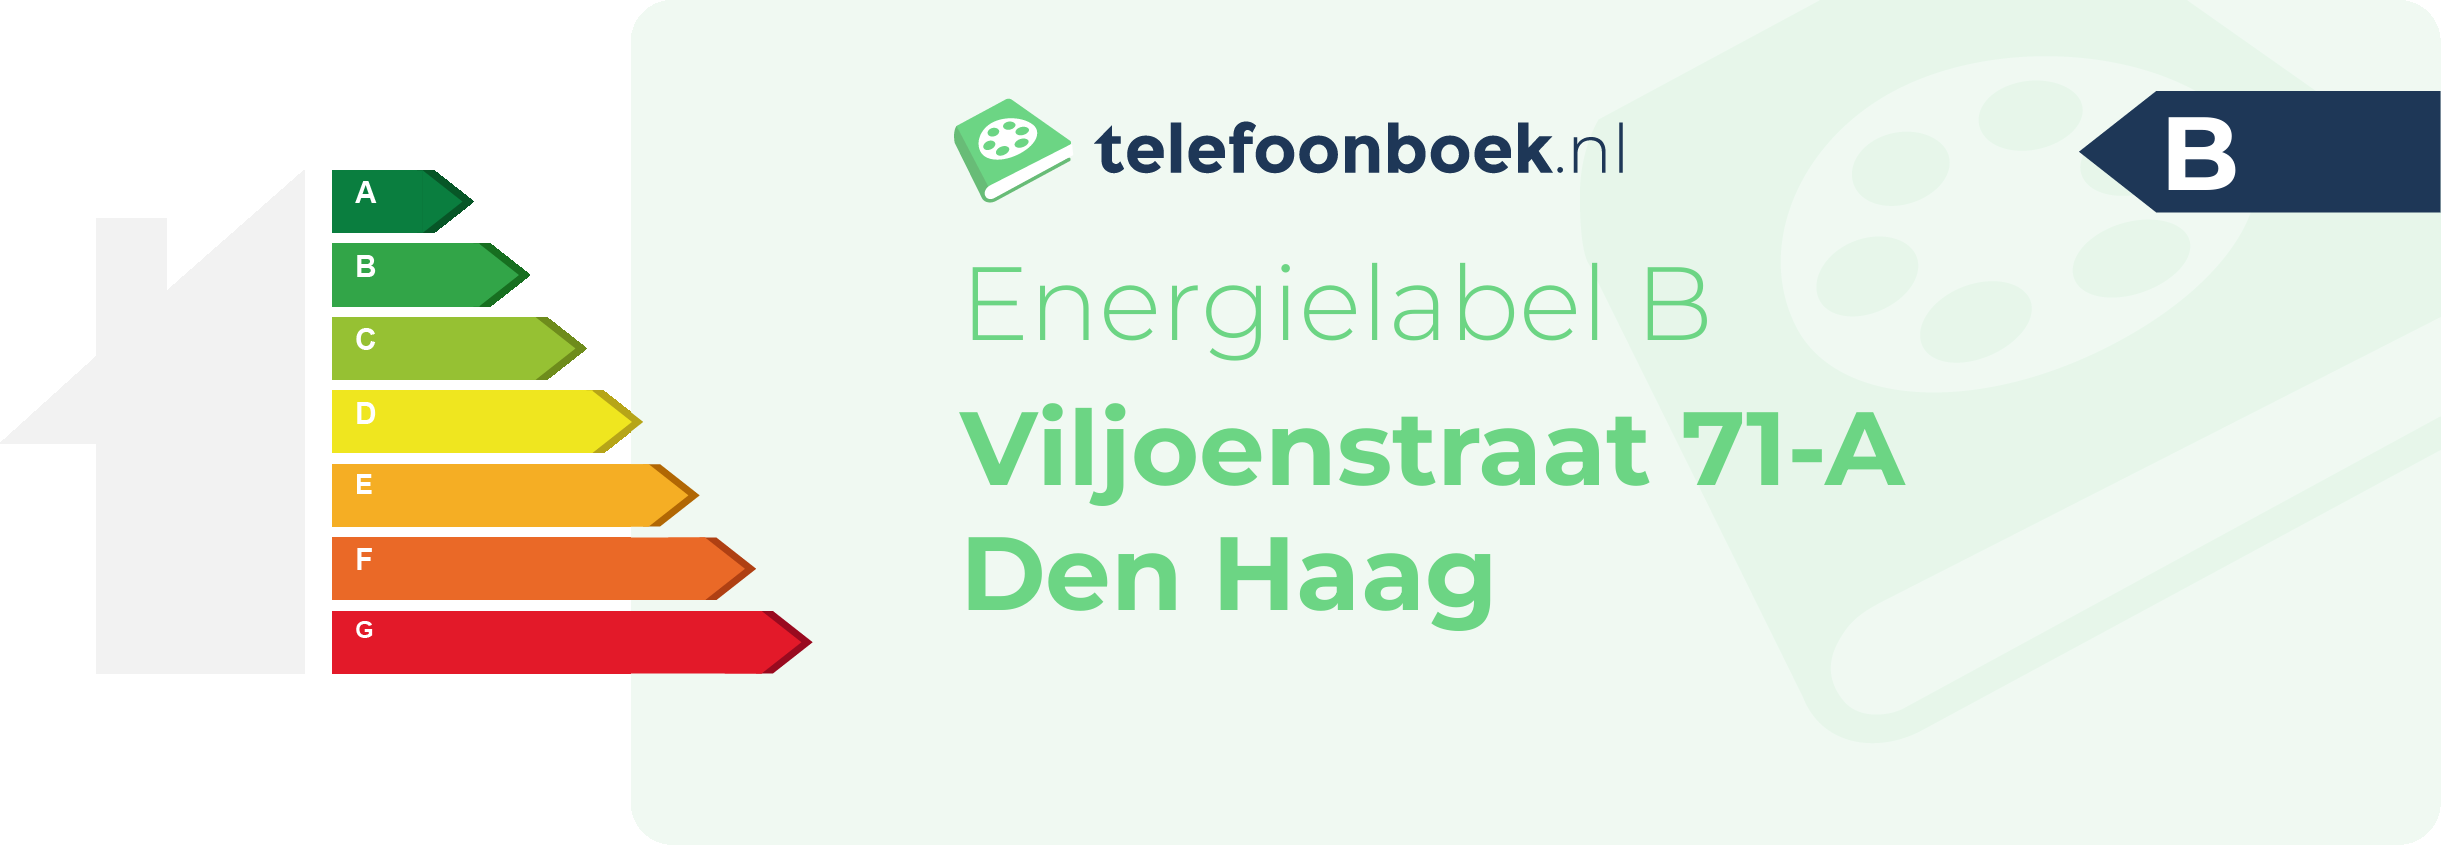 Energielabel Viljoenstraat 71-A Den Haag